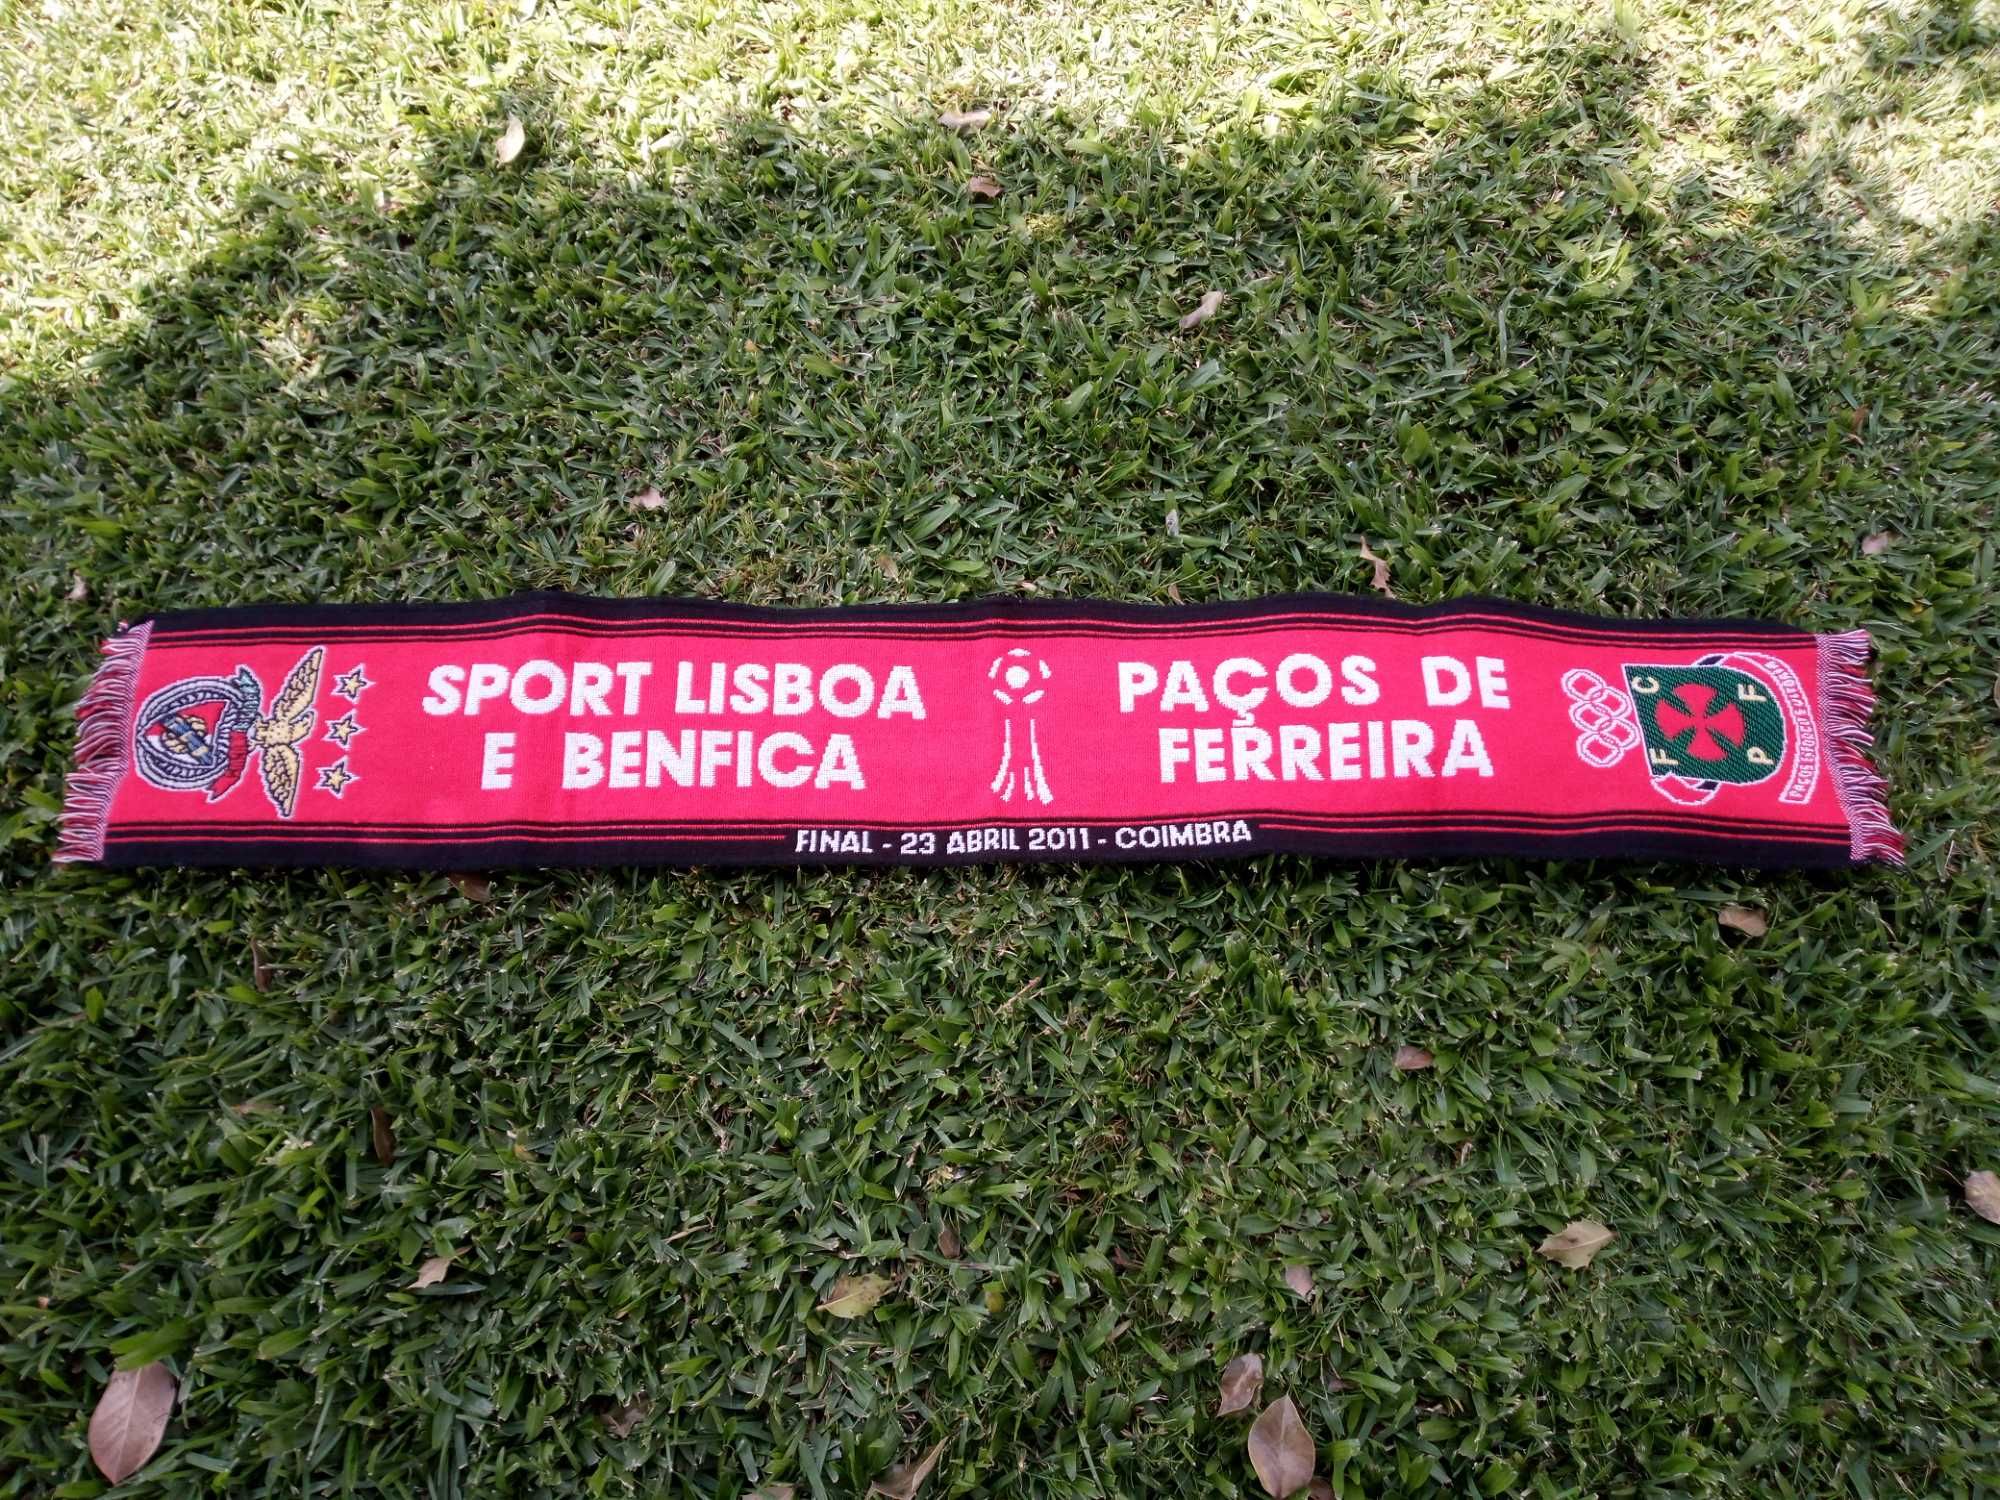 Cachecol da Final da Taça da Liga SL Benfica vs Paços de Ferreira